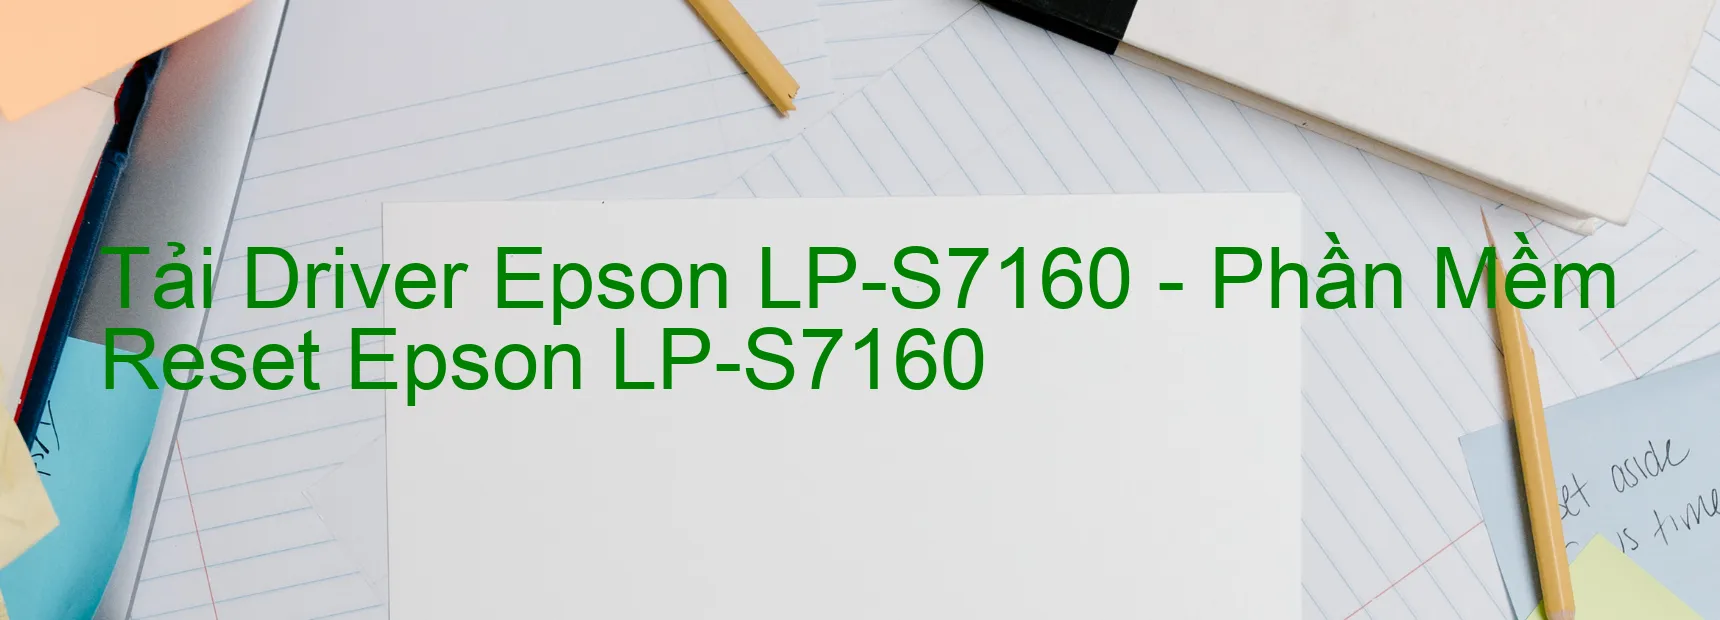 Driver Epson LP-S7160, Phần Mềm Reset Epson LP-S7160